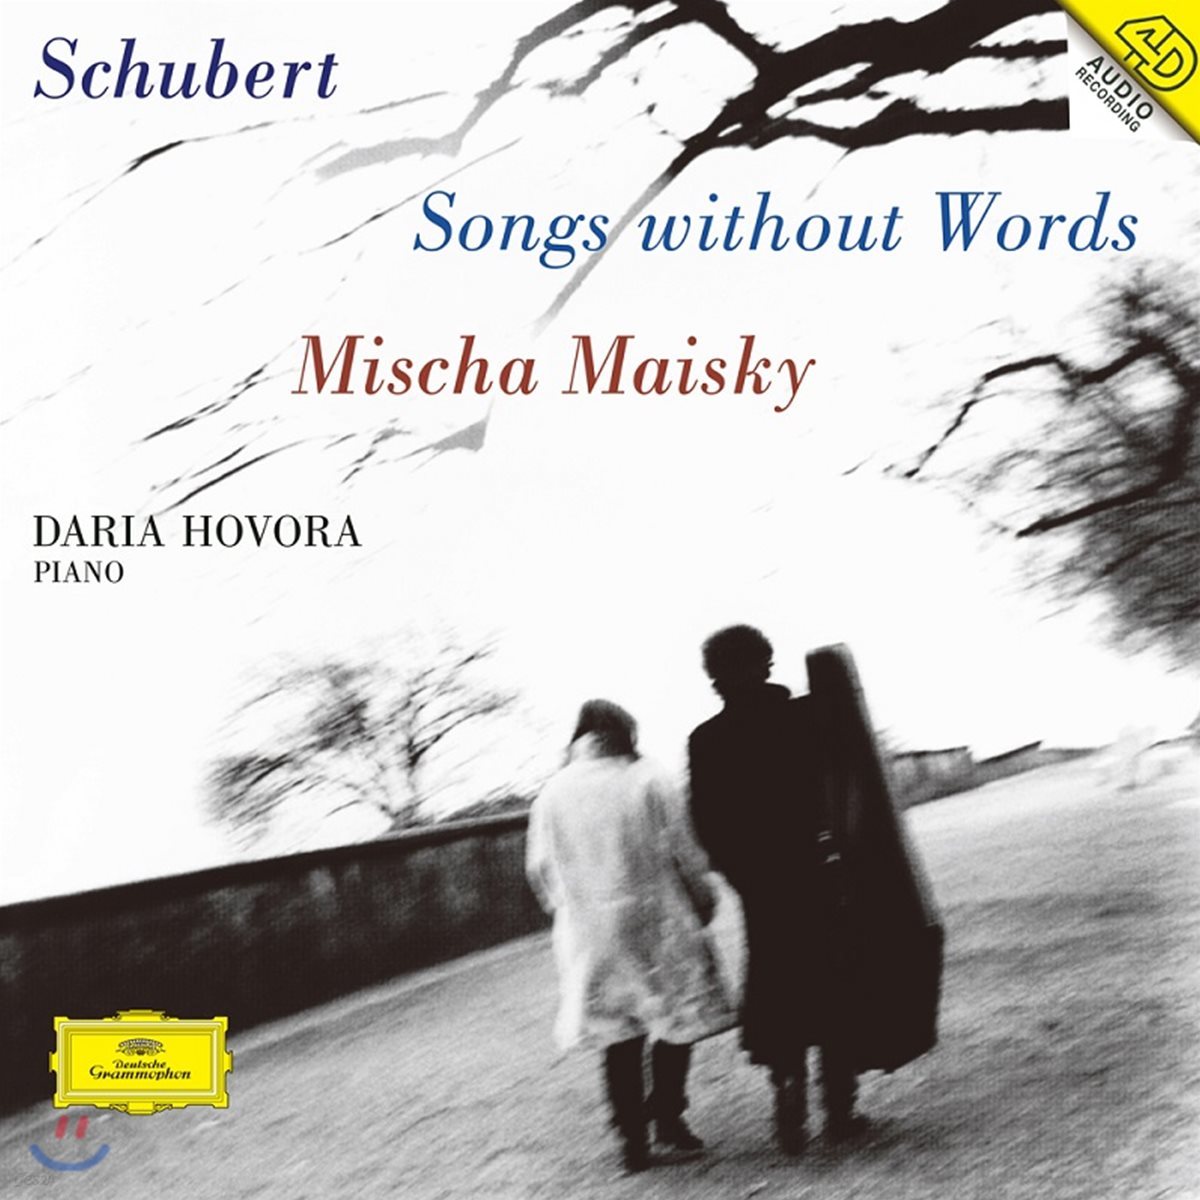 Mischa Maisky 무언가: 첼로로 연주하는 슈베르트 가곡 & 아르페지오네 소나타 (Schubert: Songs Without Words, Arpeggione Sonata) [2 LP]